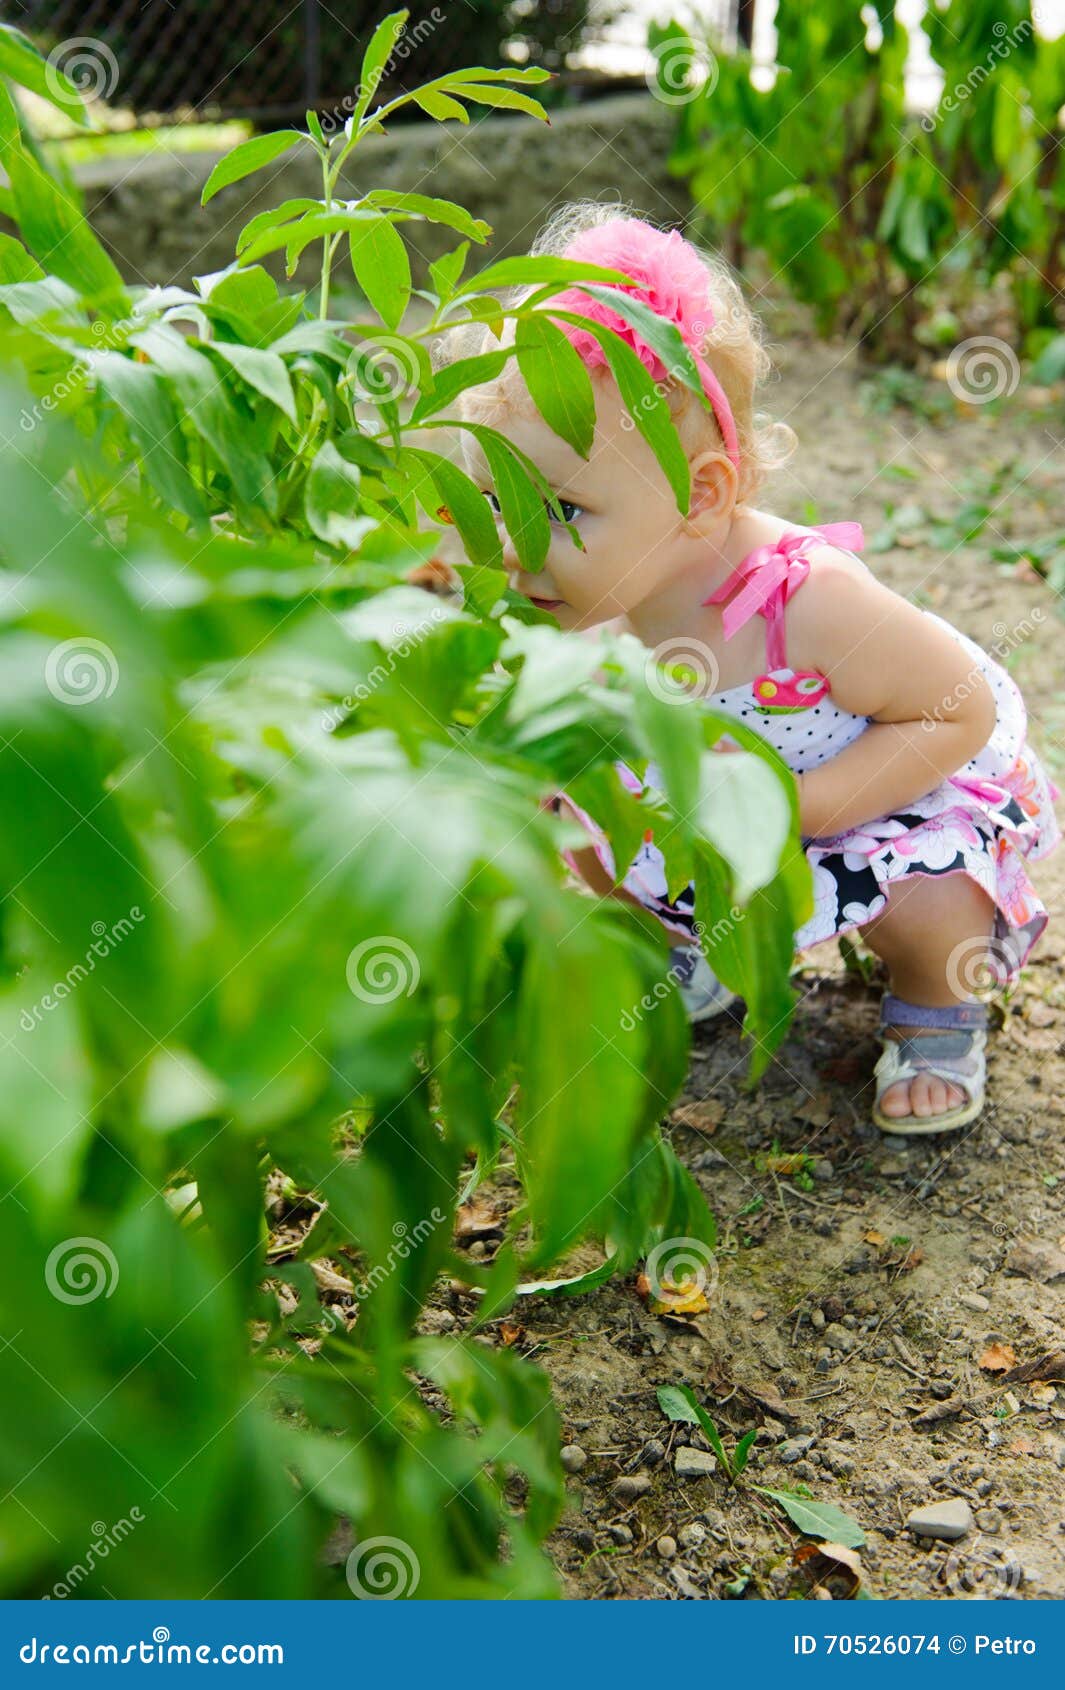 Пописать кустик. Девочка в кустах. Девочка за кустом. Куст для детей. Девочка маленькая под кустами.